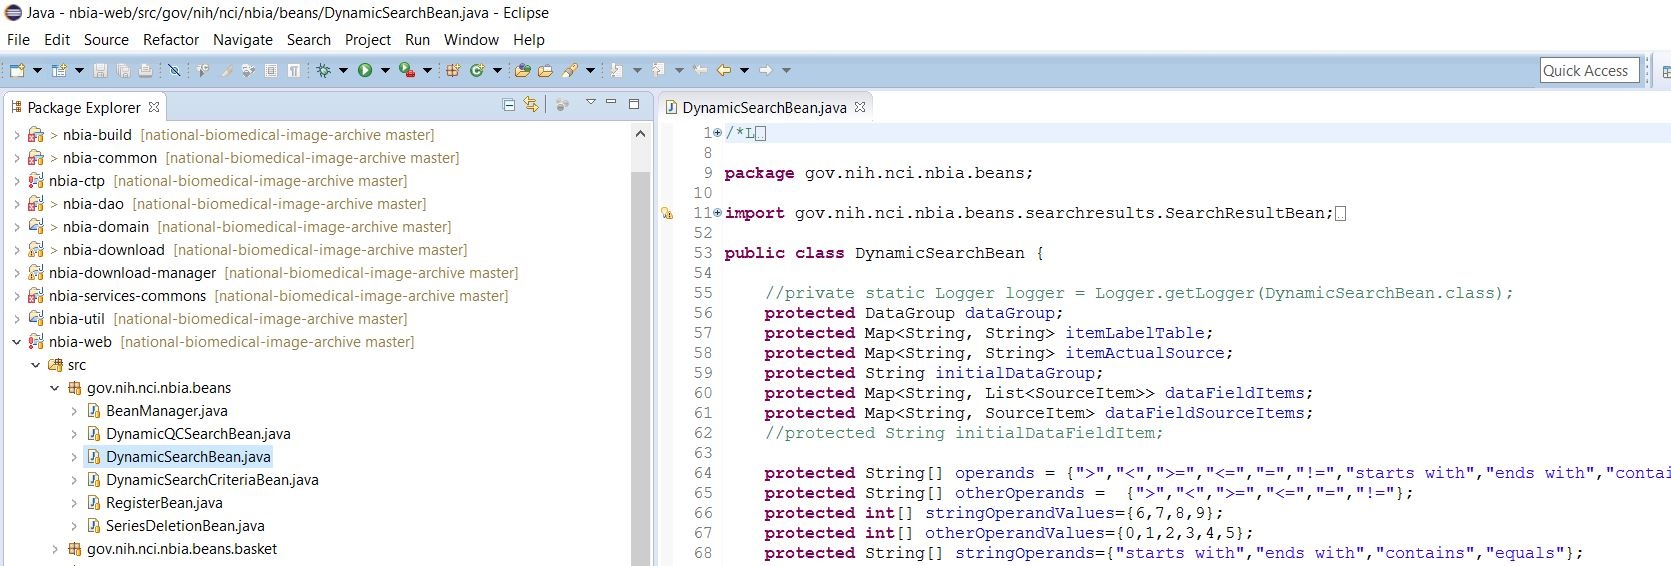 Java window showing code